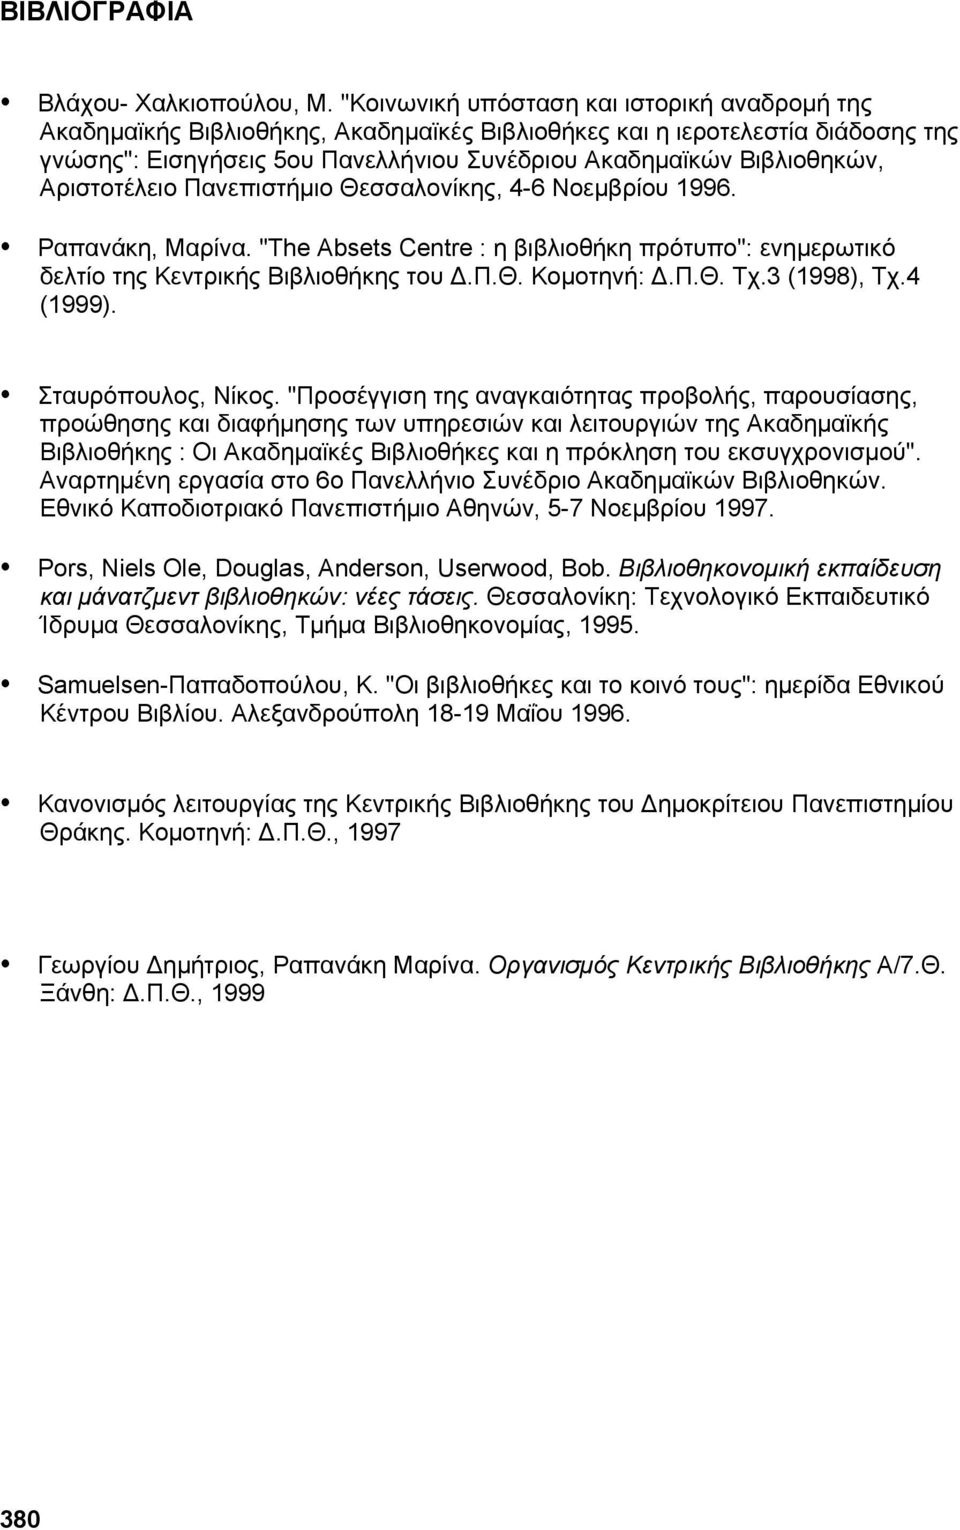 Αριστοτέλειο Πανεπιστήμιο Θεσσαλονίκης, 4-6 Νοεμβρίου 1996. Ραπανάκη, Μαρίνα. "The Absets Centre : η βιβλιοθήκη πρότυπο": ενημερωτικό δελτίο της Κεντρικής Βιβλιοθήκης του Δ.Π.Θ. Κομοτηνή: Δ.Π.Θ. Τχ.